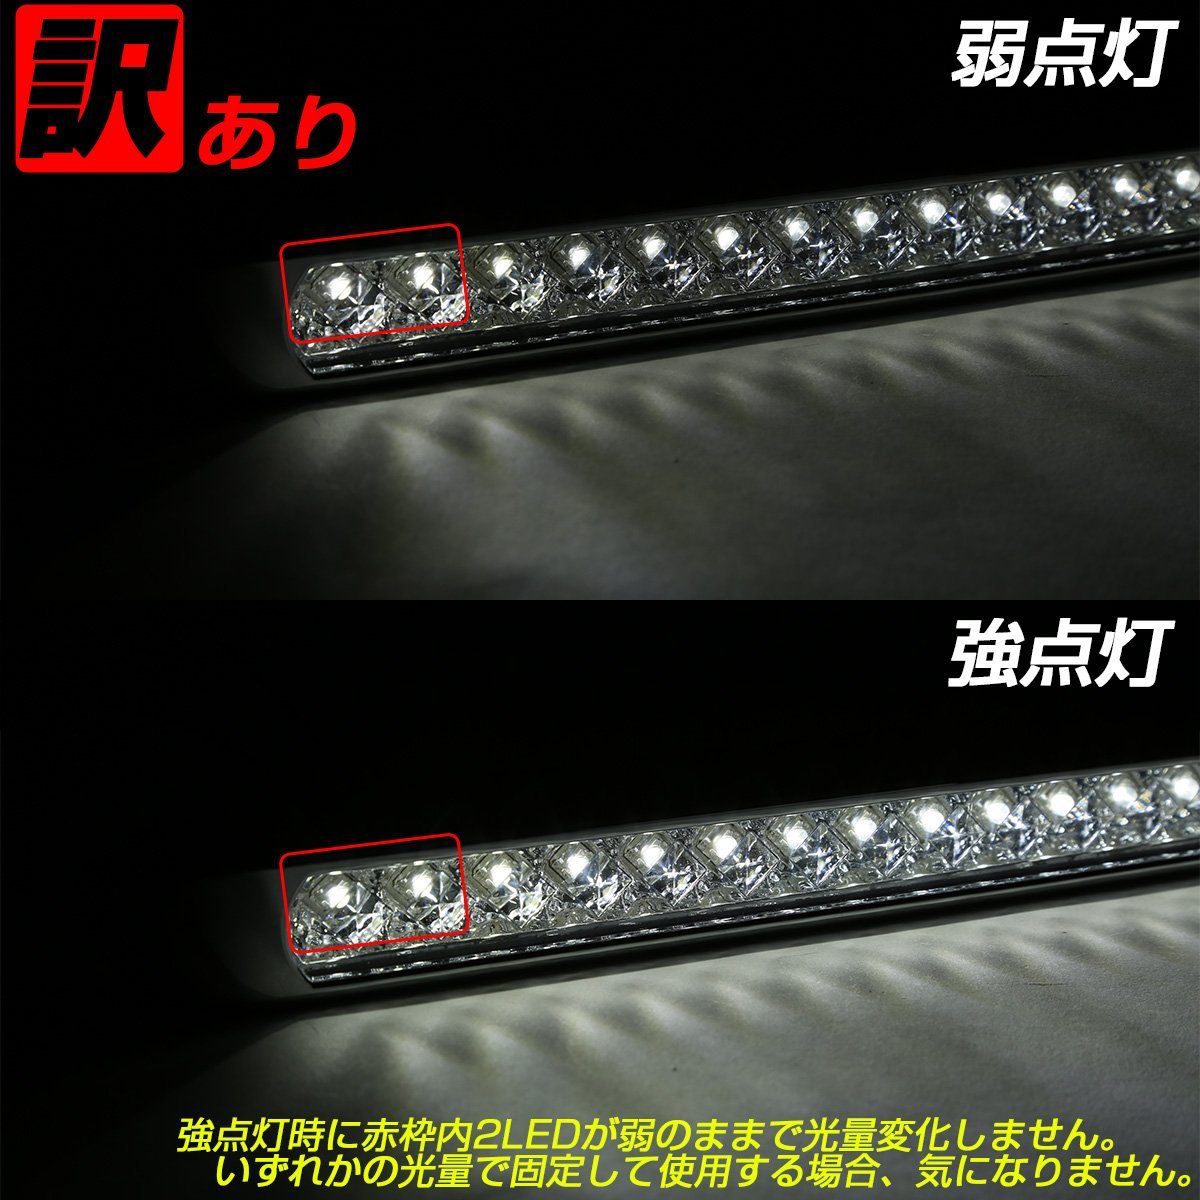 訳あり 17連 LED スーパーワイド マーカー ランプ 12V 24V兼用 ブルーレンズ ブルー発光 車高灯 サイドマーカーに ZZF-234の画像9